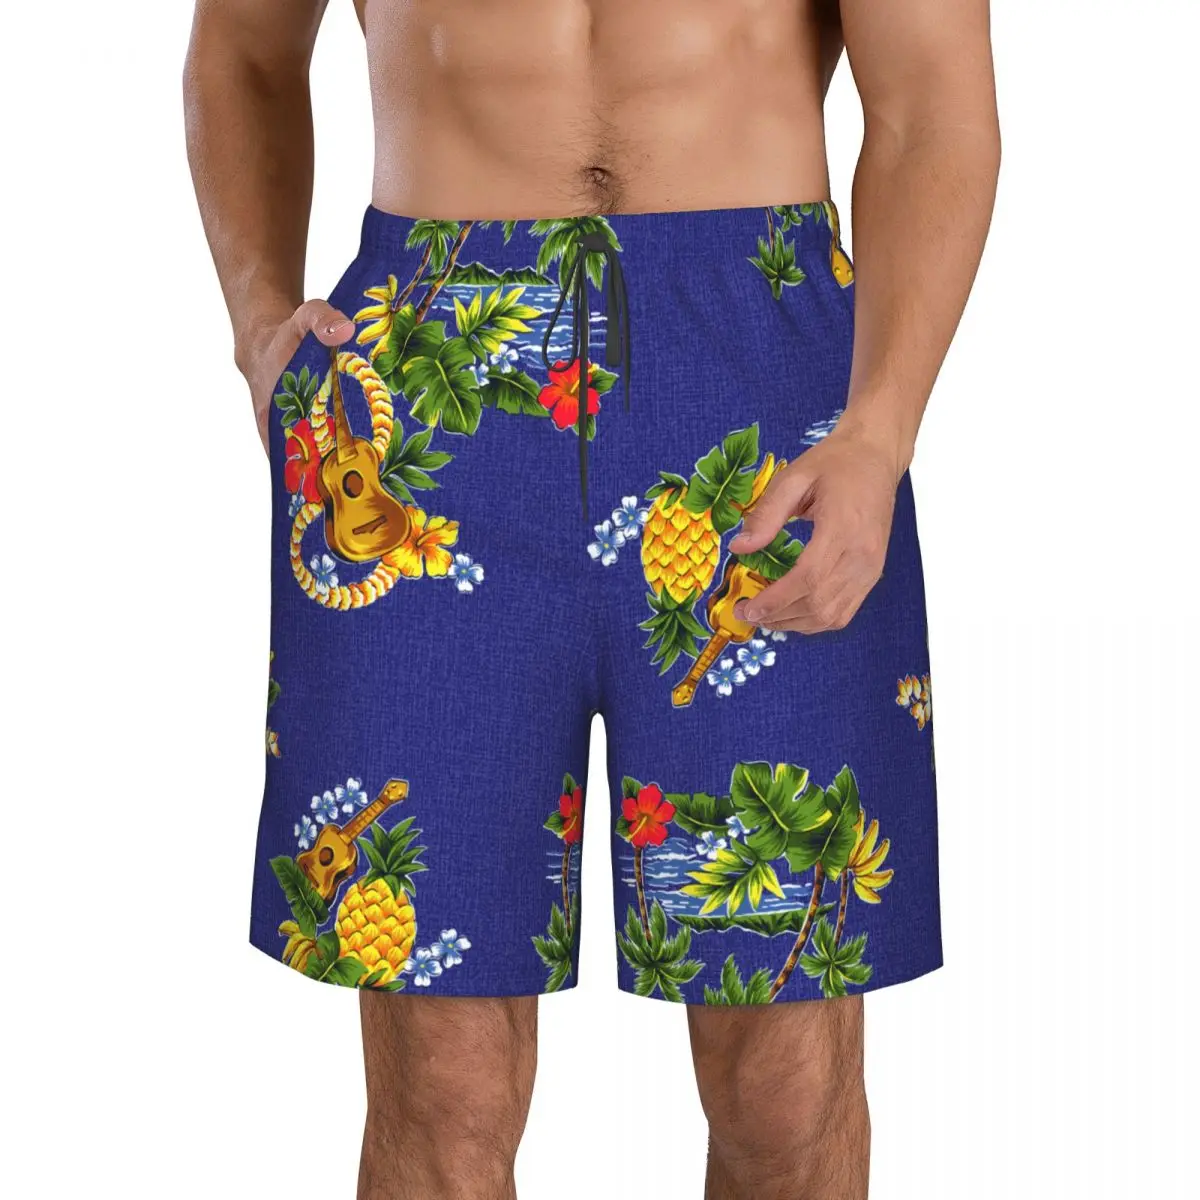 

Быстросохнущие плавательные шорты для мужчин, мужской купальник, плавки, летняя пляжная одежда для купания, гитары и пальмы